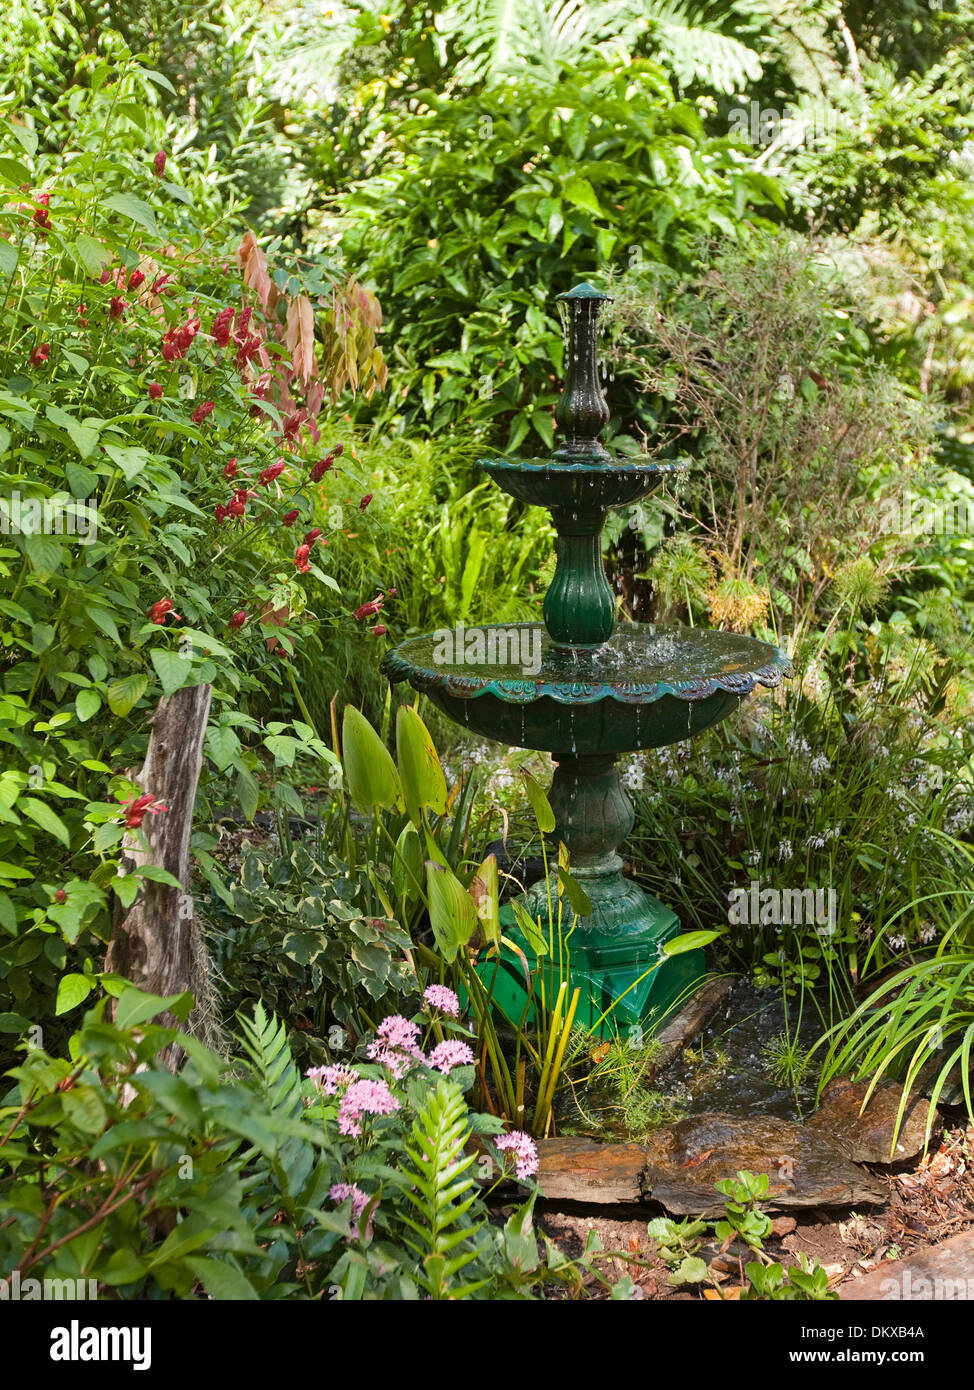 Spettacolari e lussureggianti sub-tropicale giardino con fontana decorativa acqua caratteristica, fogliame color smeraldo, arbusti e piante perenni Foto Stock